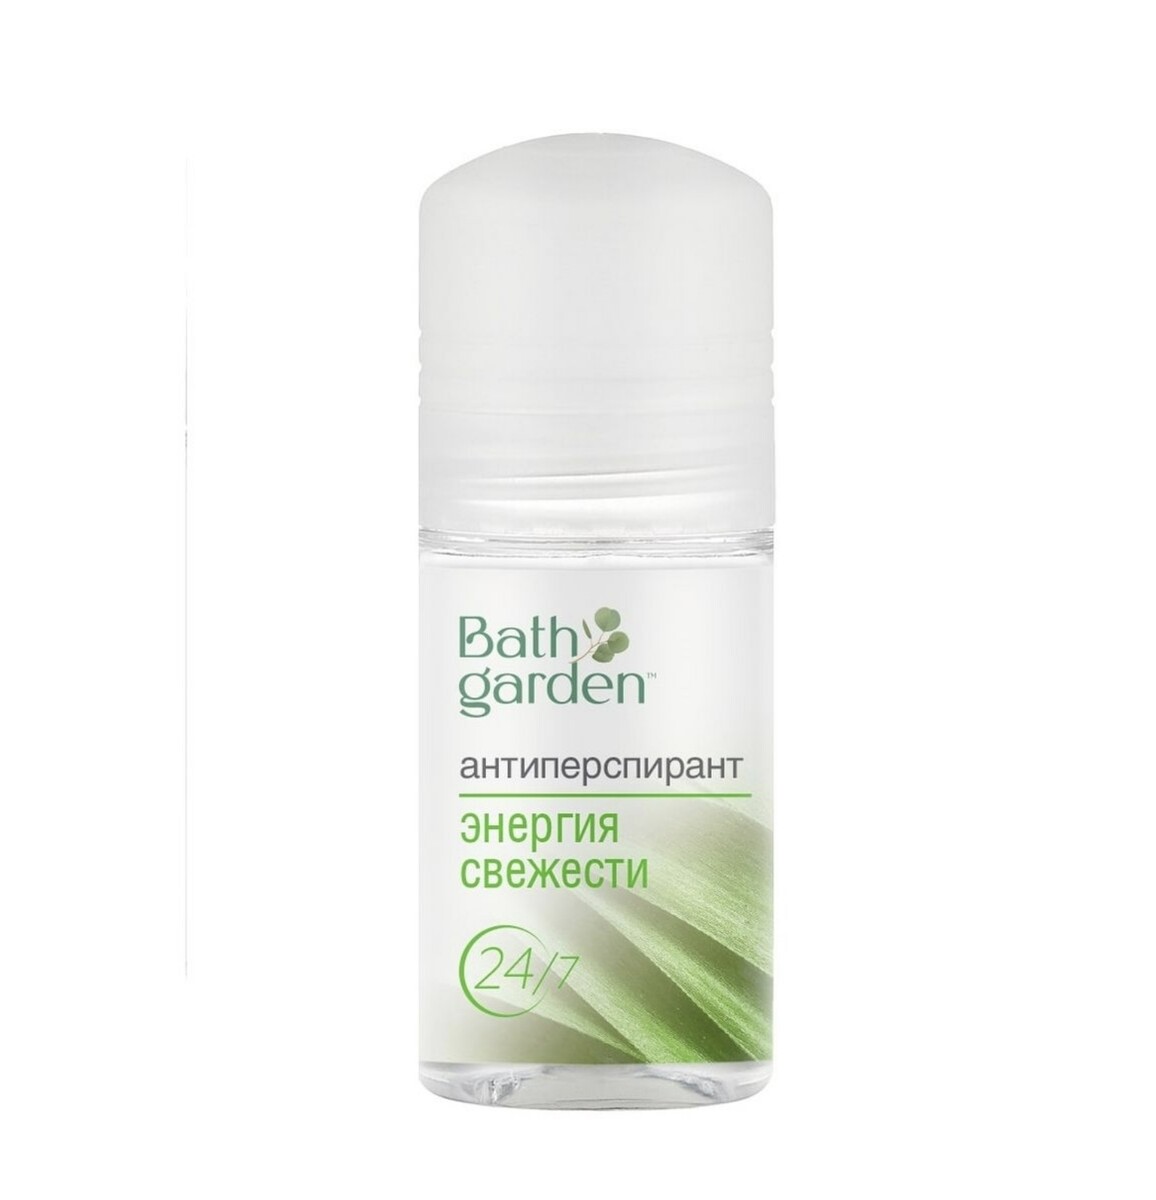 Bath garden дезодорант-антиперспирант энергия свежести, 50мл дезодорант антиперспирант крем романтическая франция 50 мл